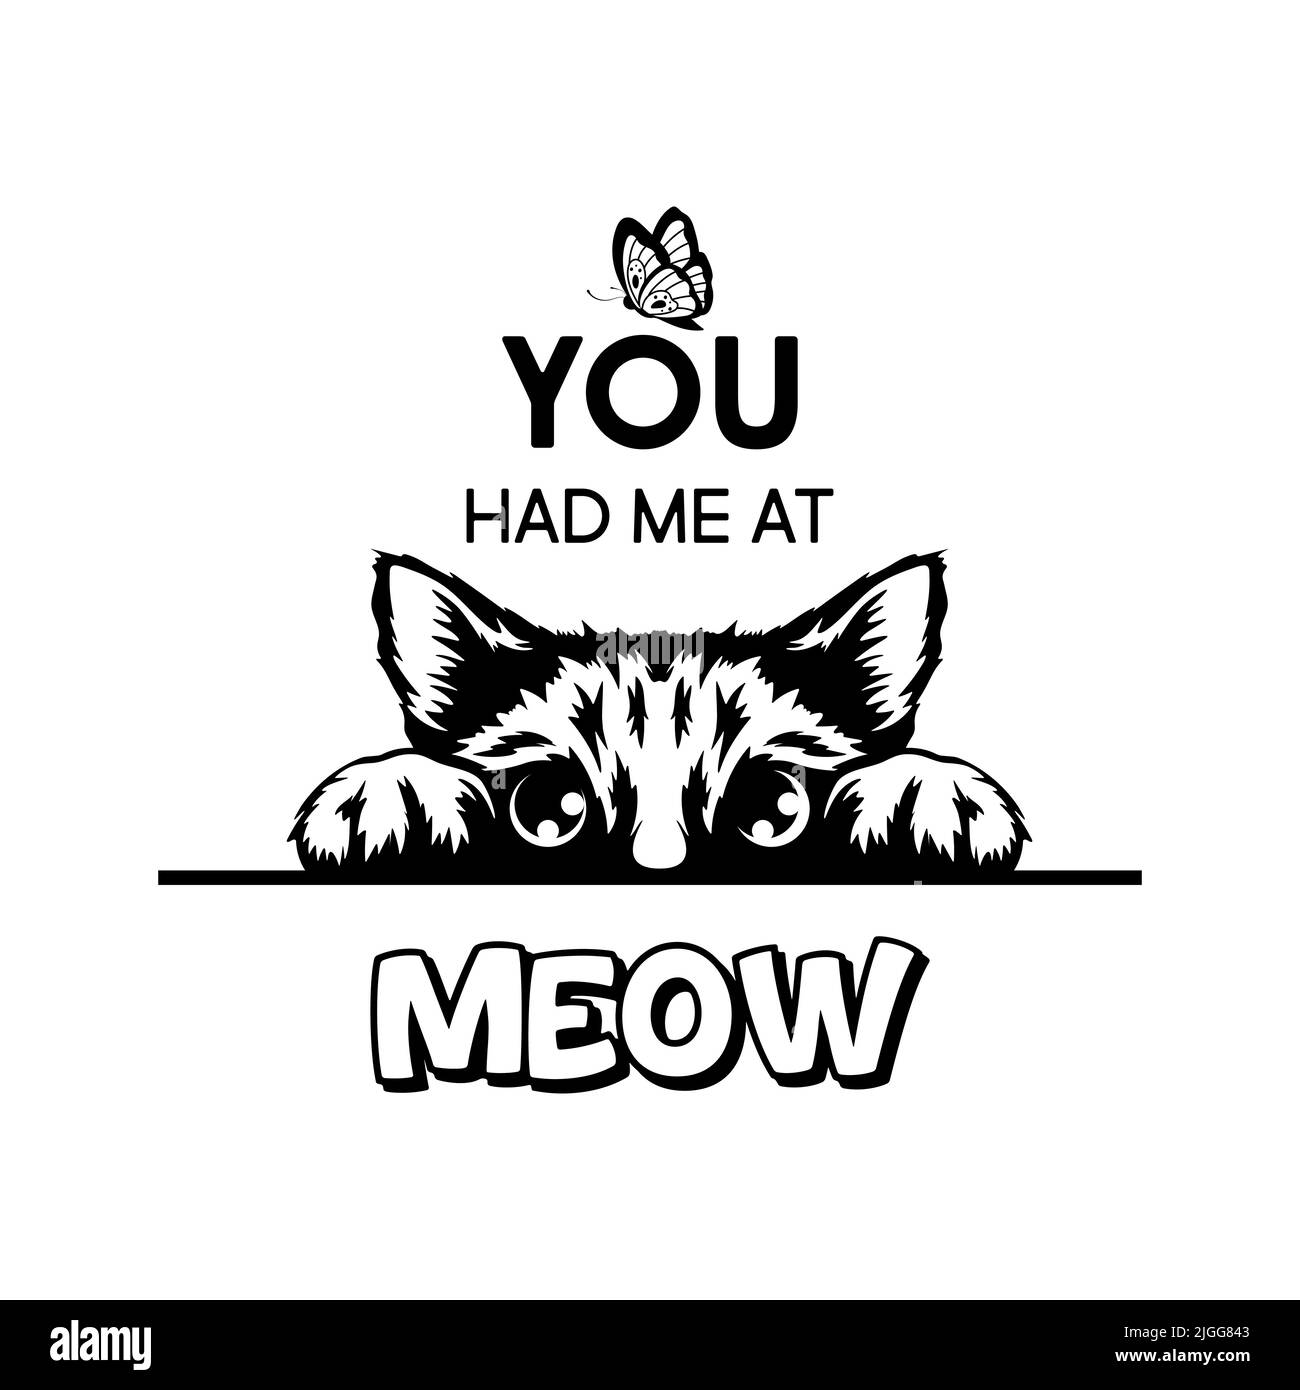 Du Hattest Mich In Meow. Vektor-Poster mit Katze Zitat und monochrome Hand gezeichnet Schwarz und Weiß versteckt Peeking Cute Kitten. Funny Kitten ist Peeking and Stock Vektor